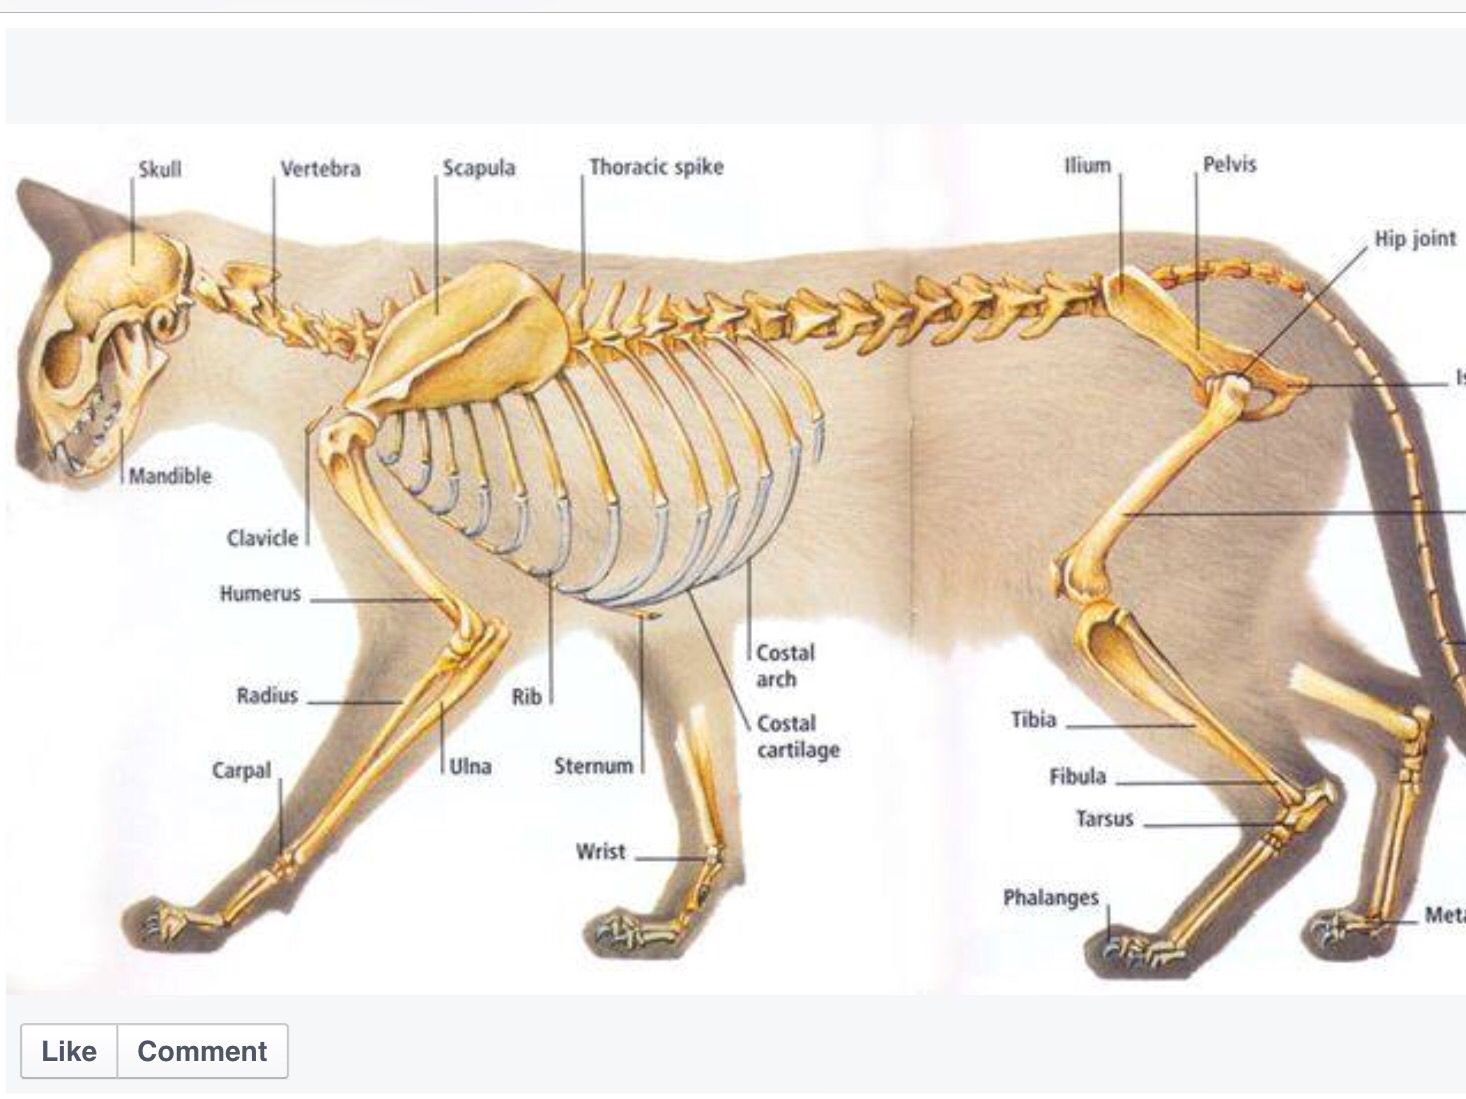 Строение лапы кошки - анатомия лапы